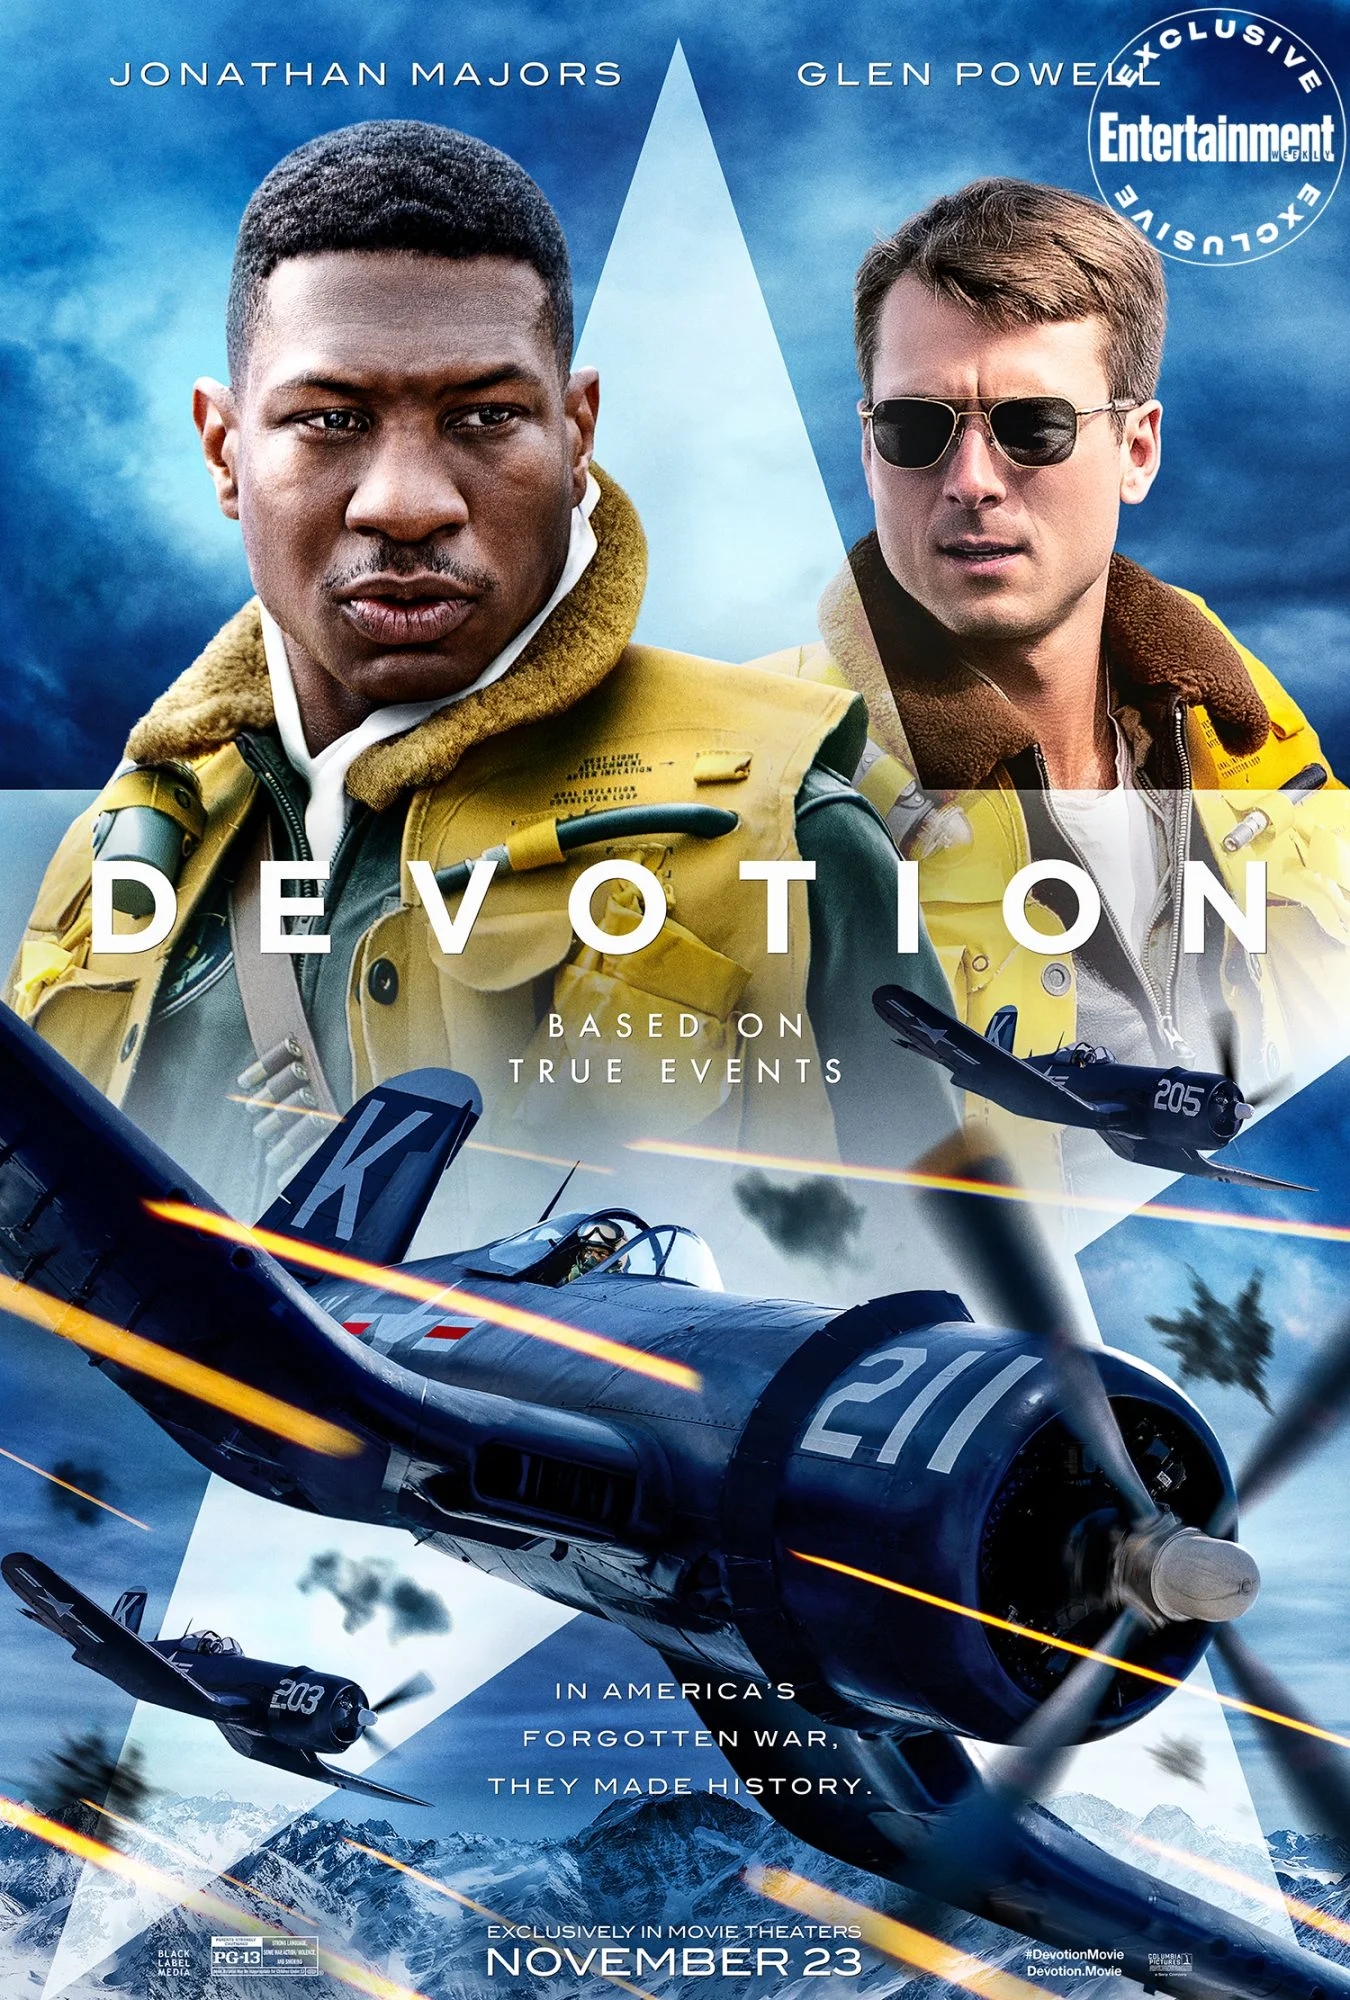 A 'Devotion' egy pilóta történetét mutatja be, aki megpróbálta megmenteni szárnysegédjét a koreai háborúban.